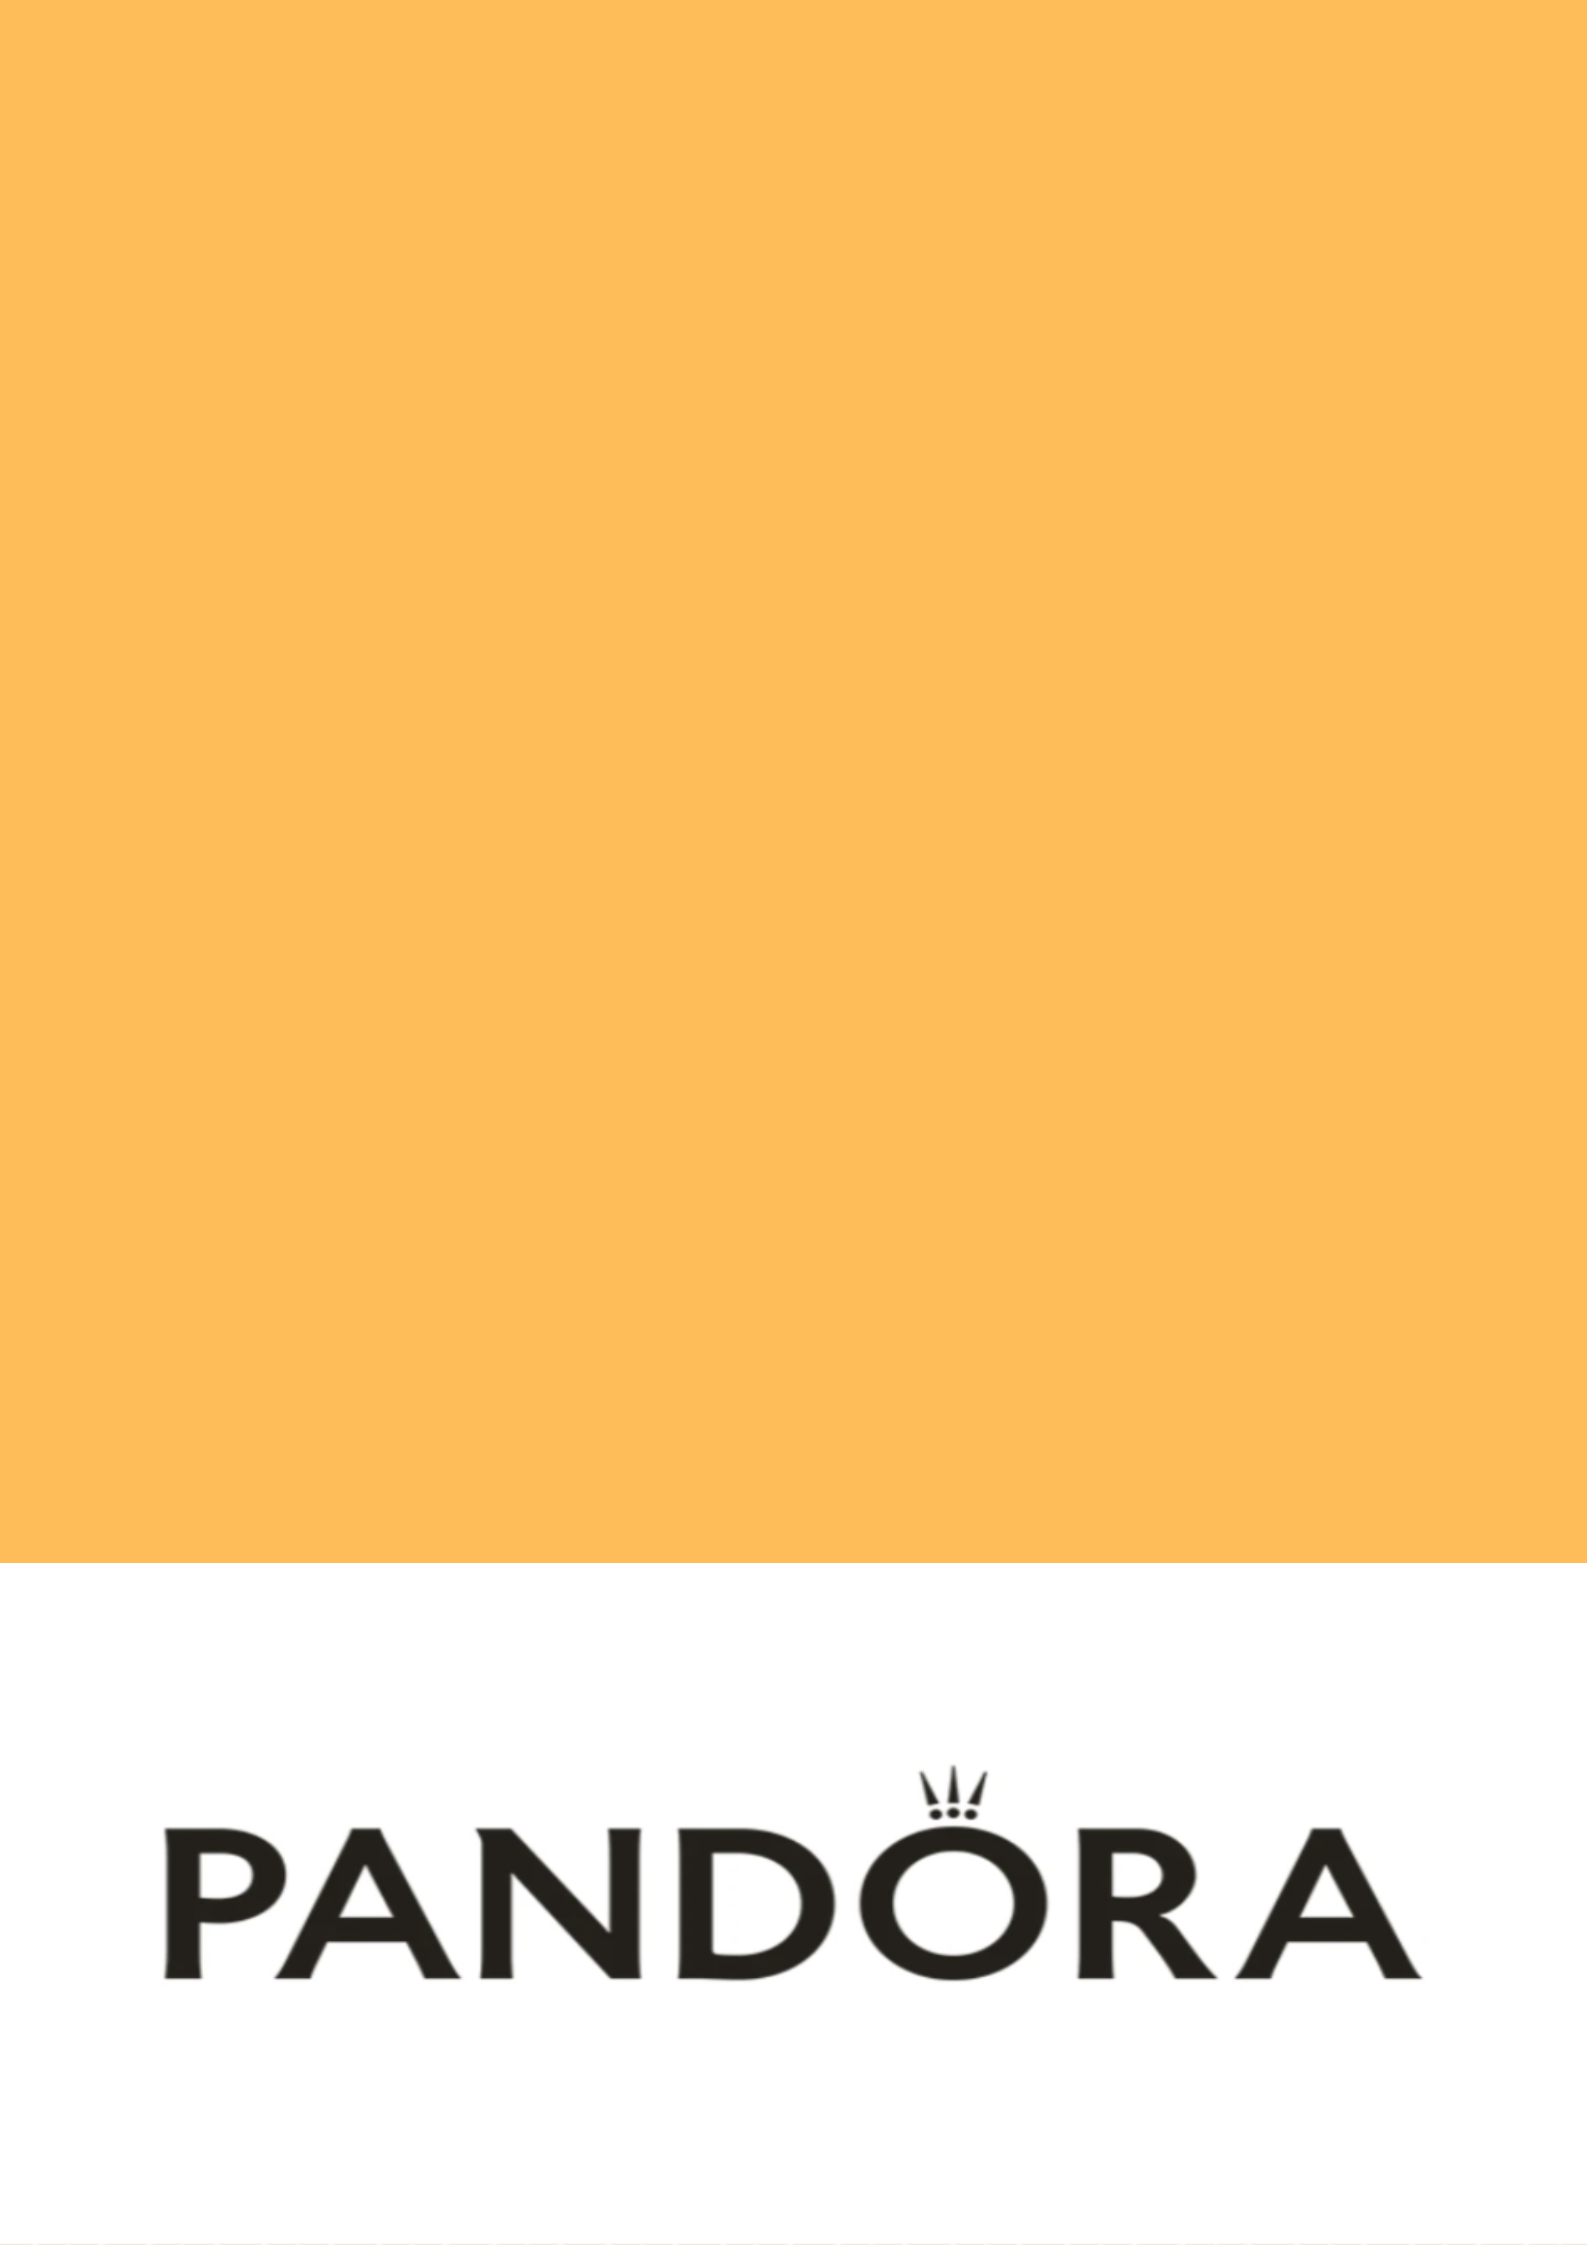 Pandora, world's largest jewelry marker, will no longer use mined diamonds